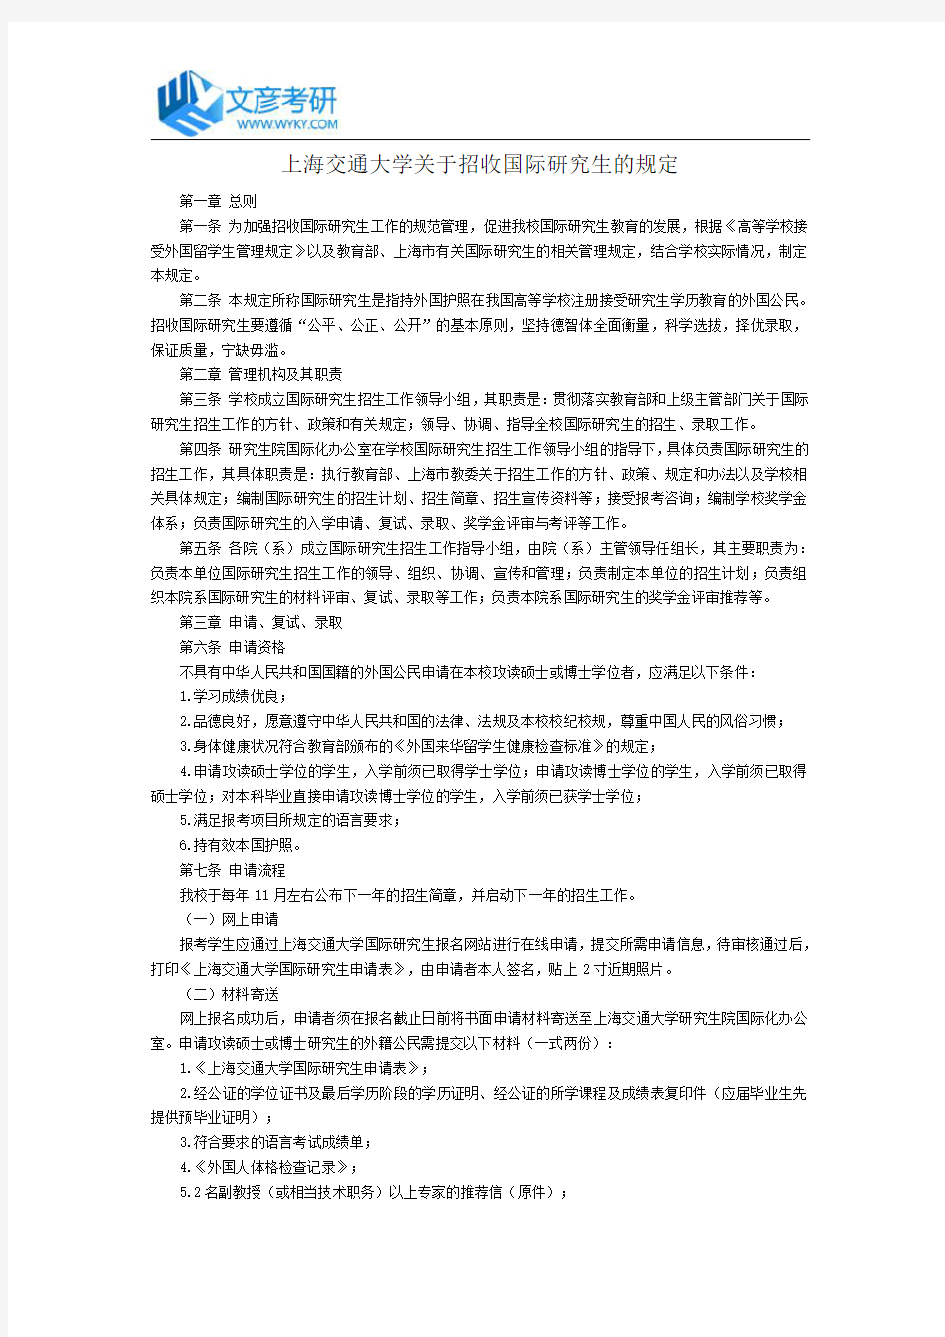 上海交通大学关于招收国际研究生的规定